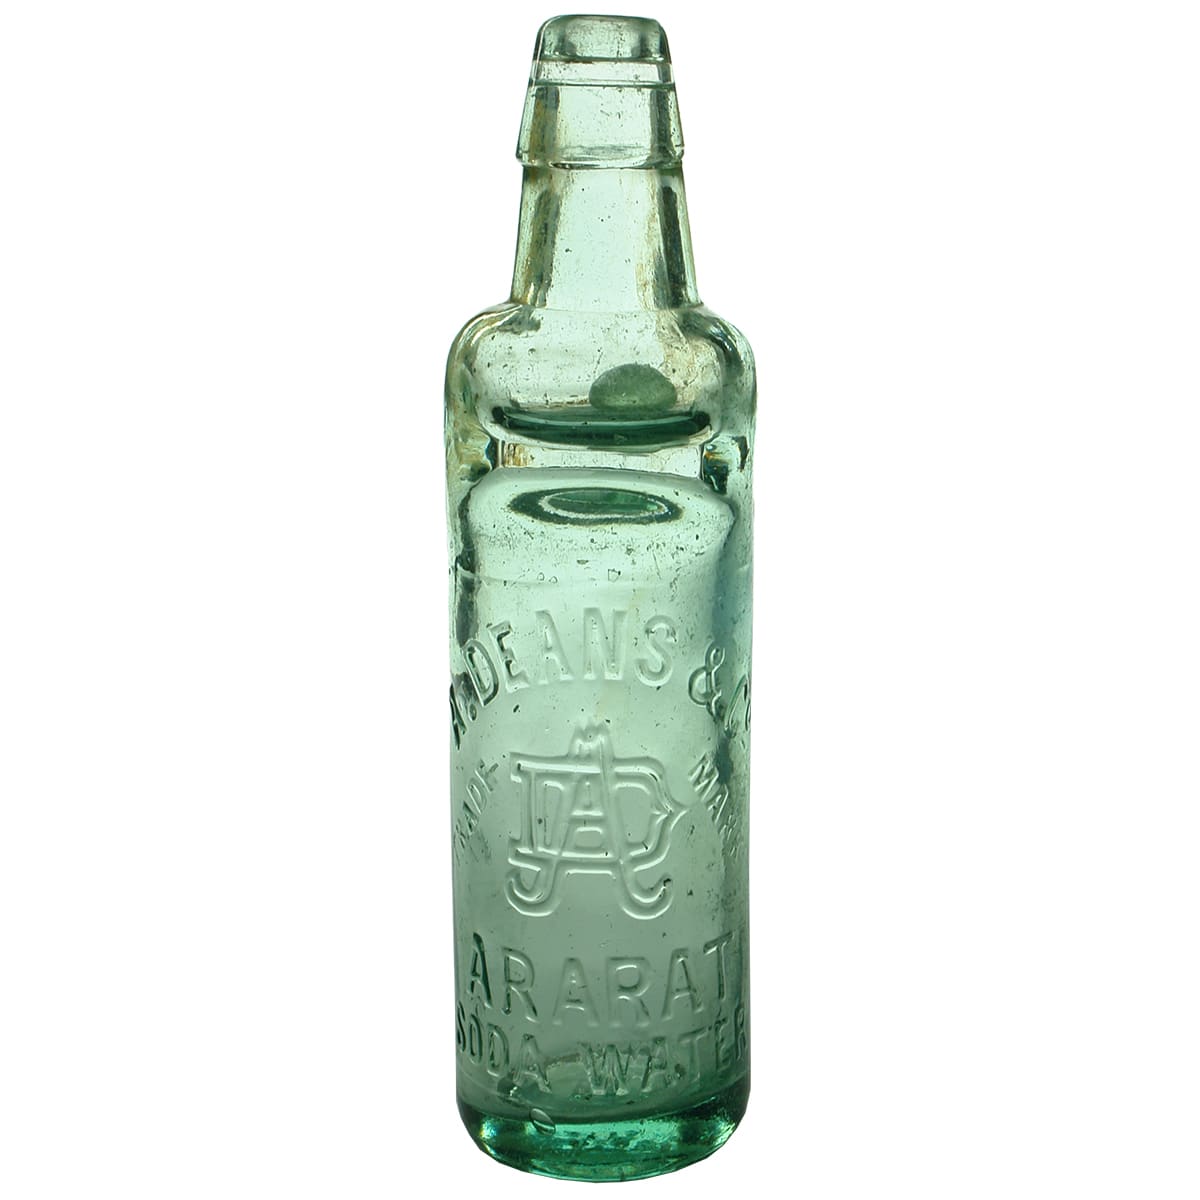 Codd. Deans, Ararat. Soda Water. All Way Pour. Aqua. 10 oz.